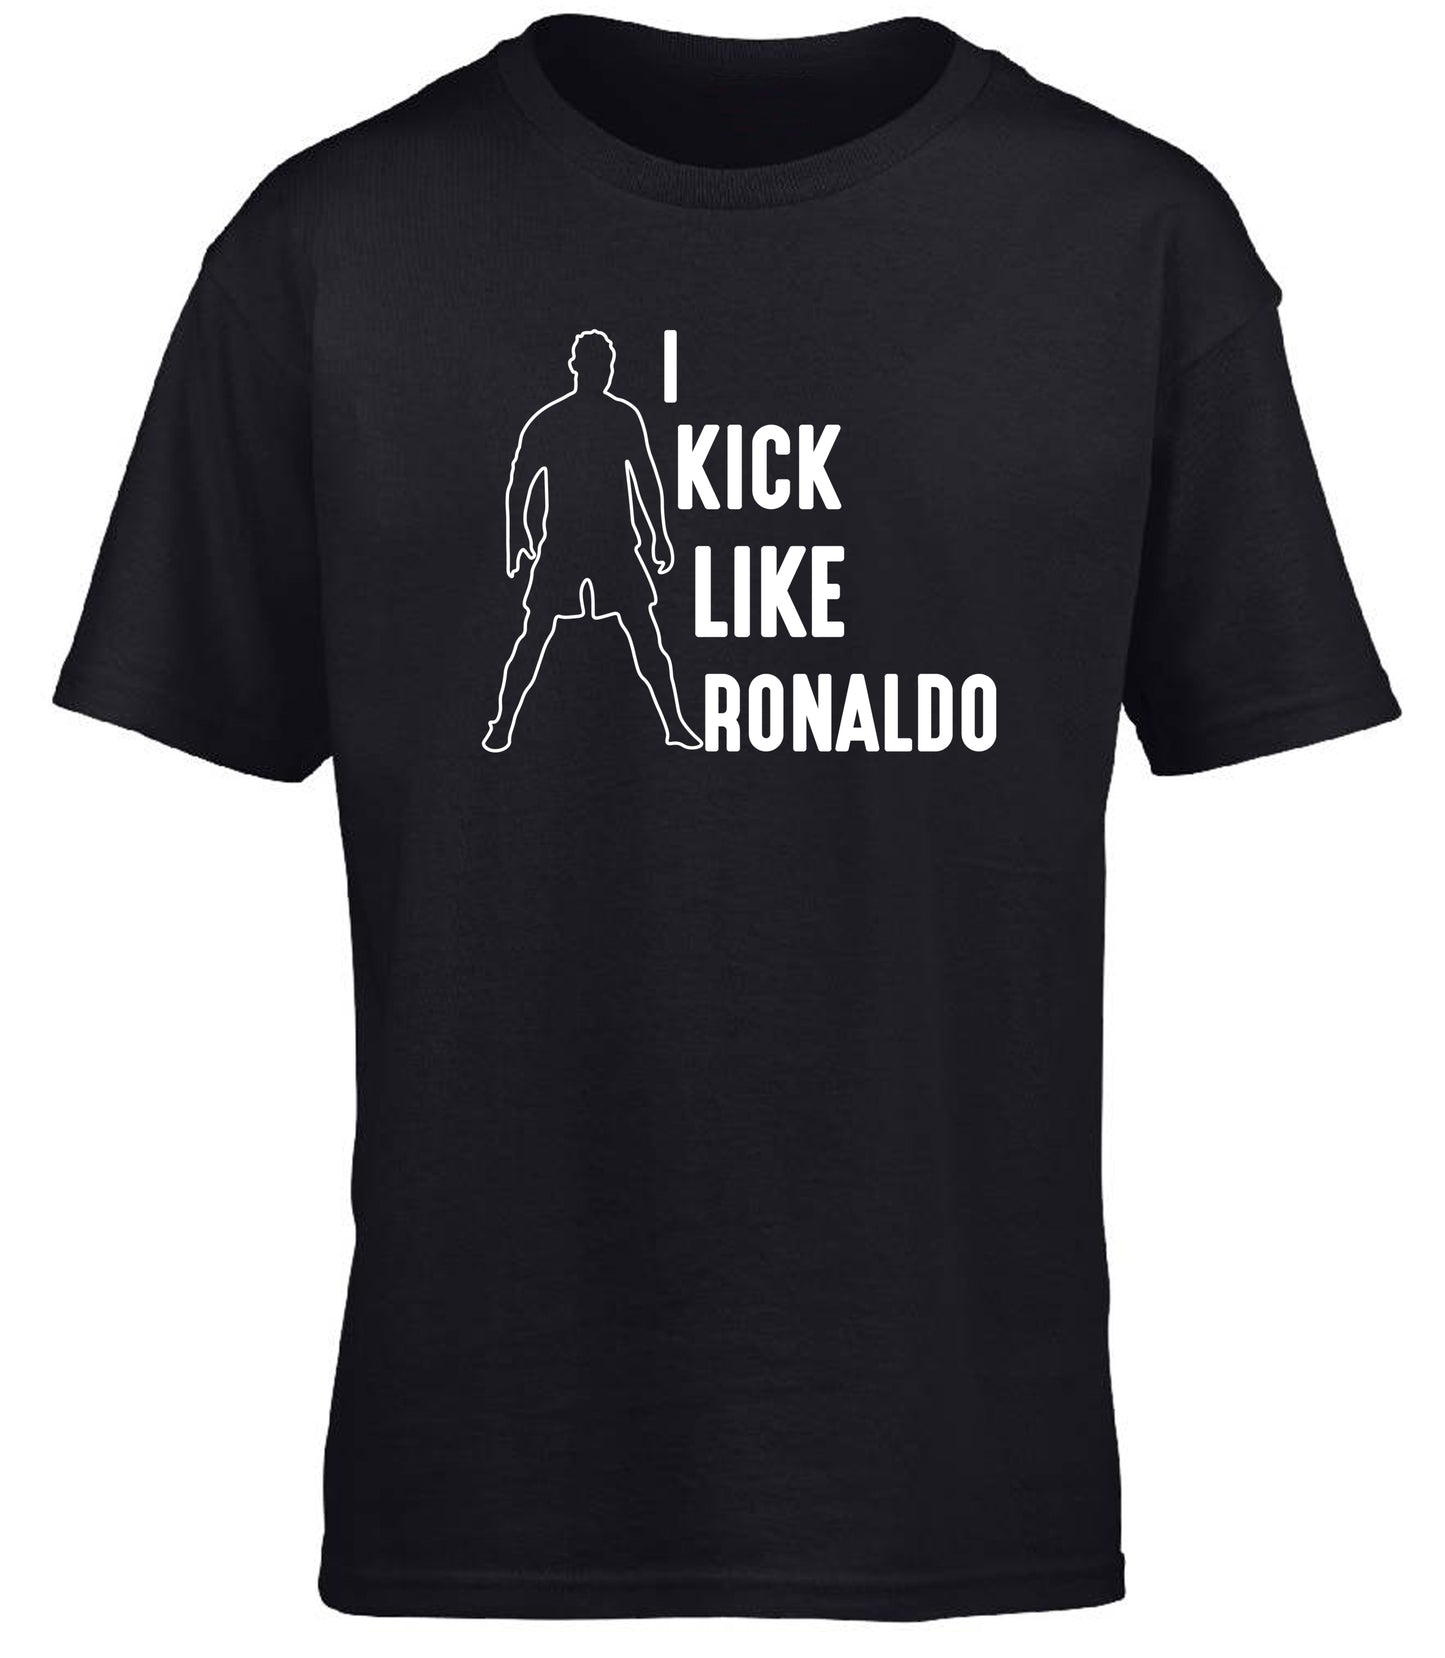 I Kick Like Ronaldo children's T-shirt